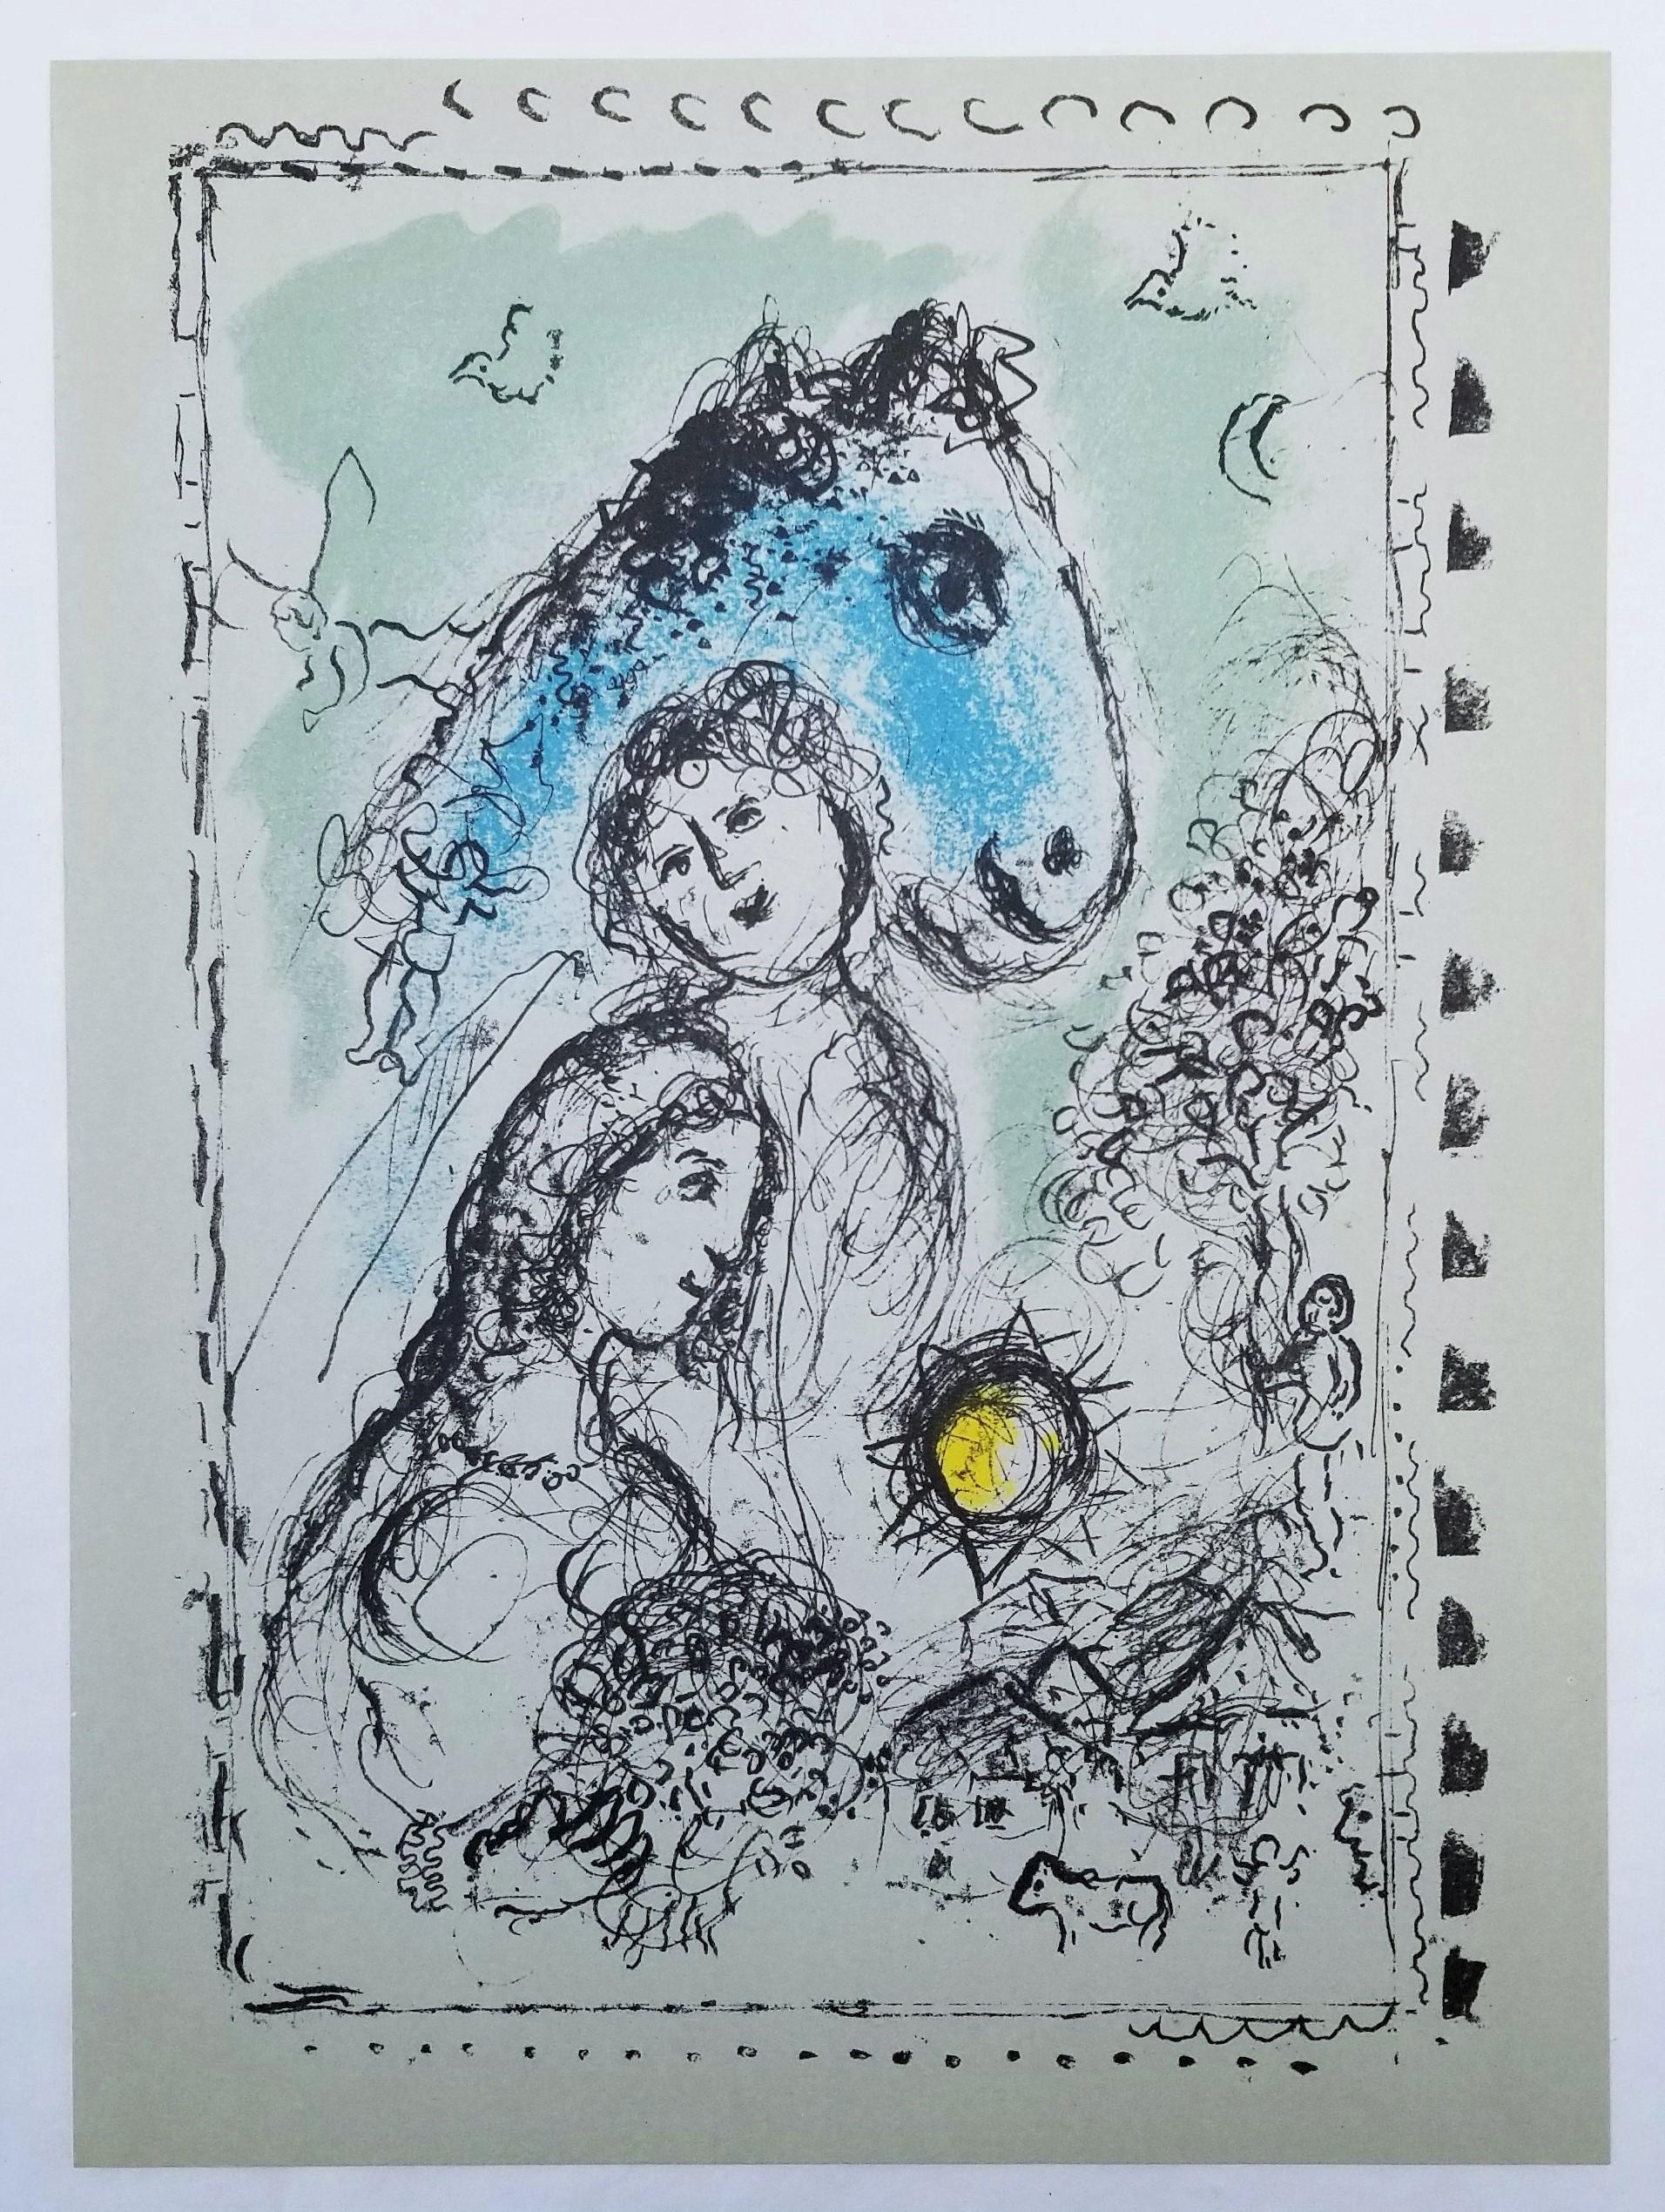 Artistics : Marc Chagall (franco-russe, 1887-1985)
Titre : 